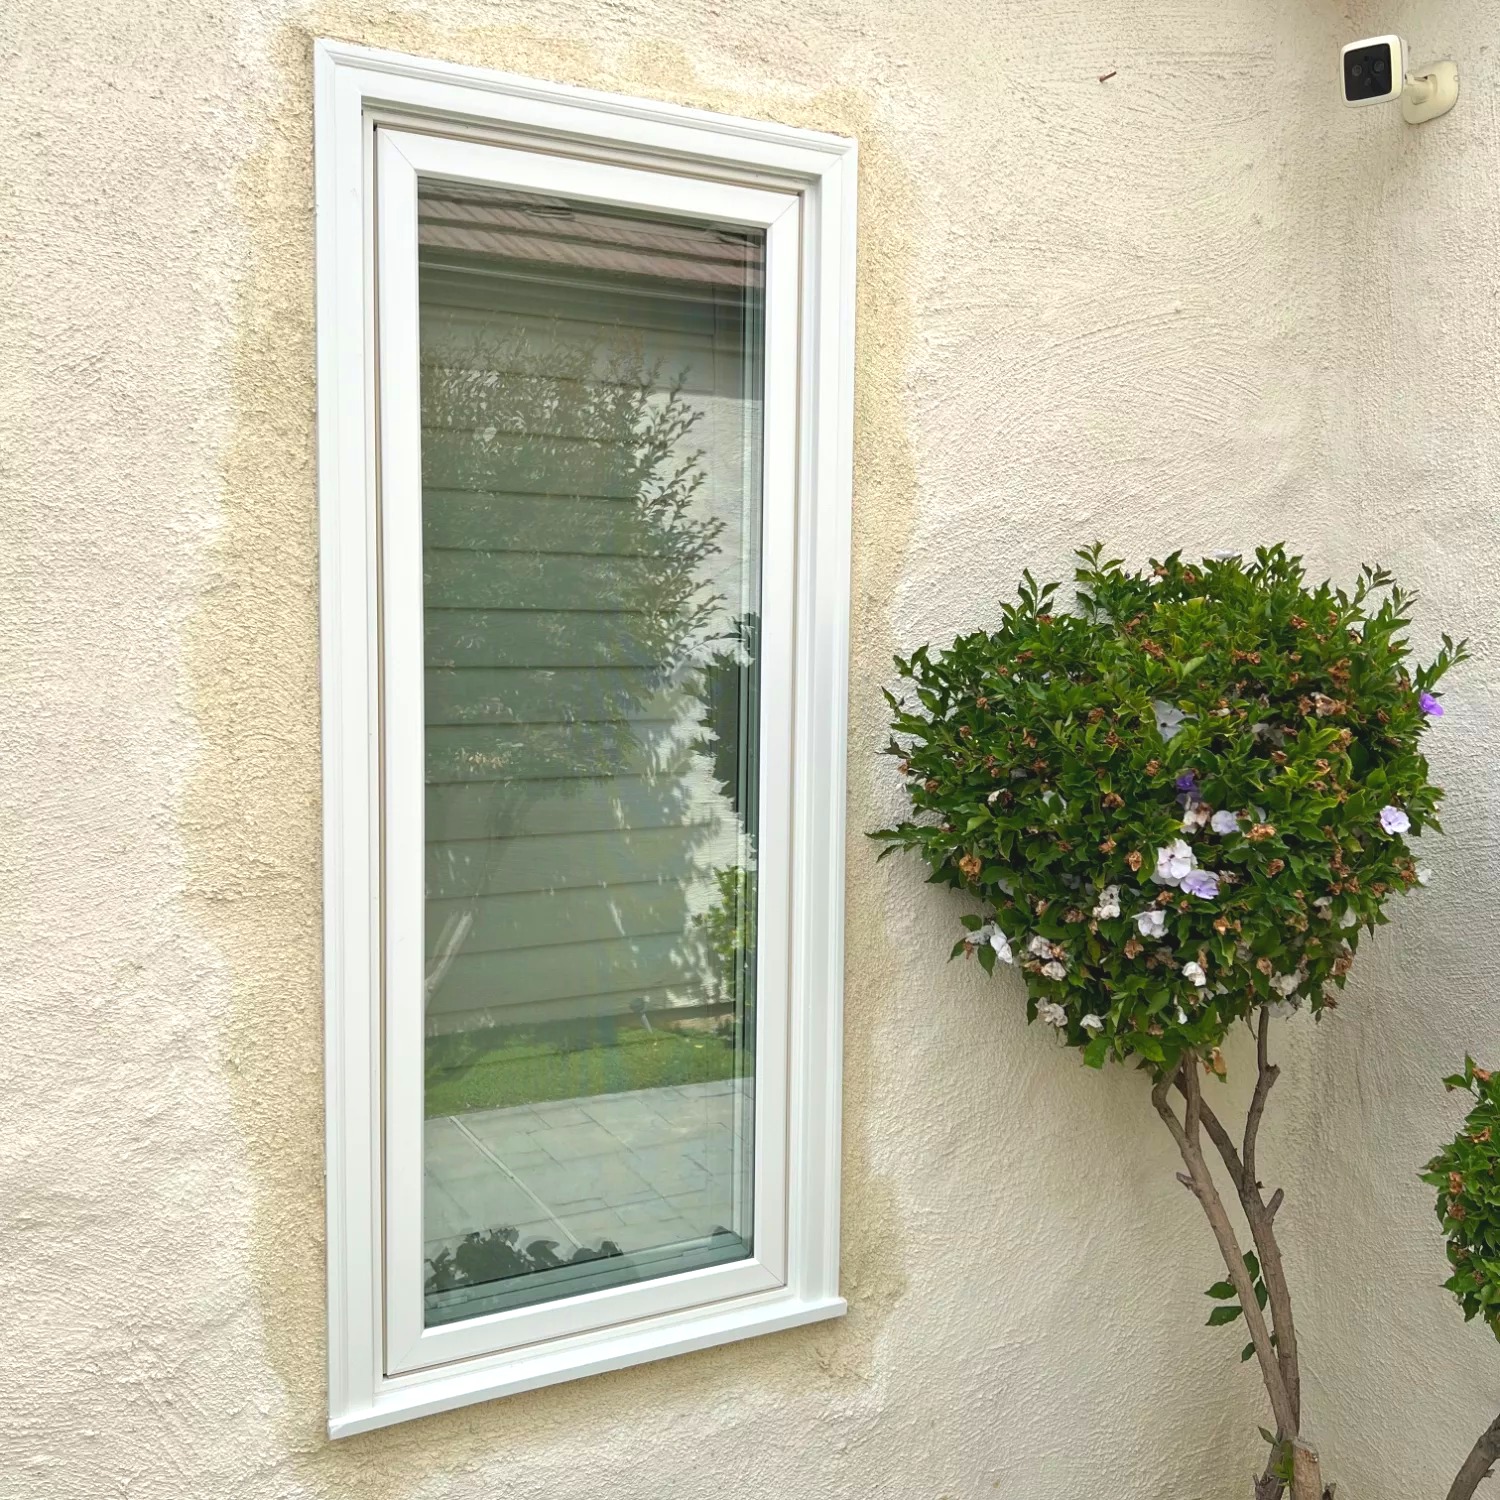 ﻿Window and Door Replacement Project in Riverside, CA